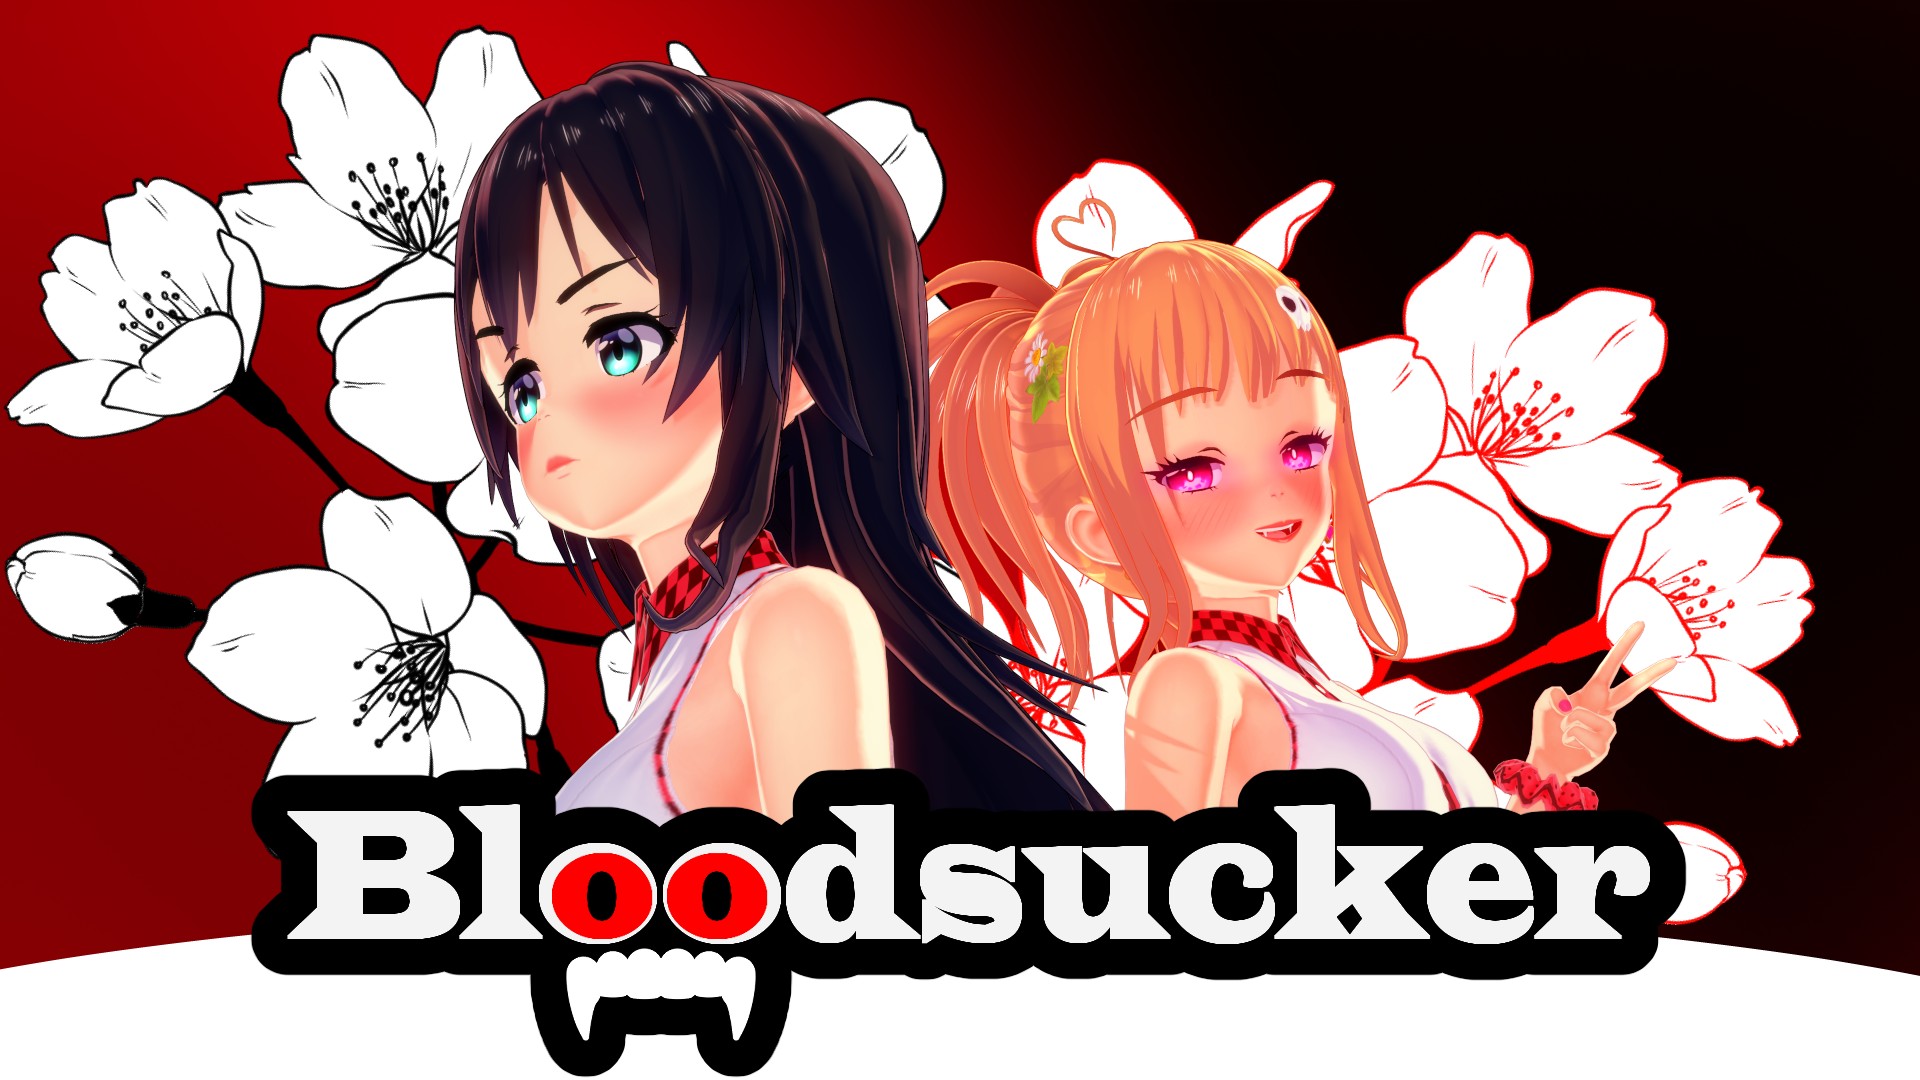 Bloodsucker (v0.2.0)